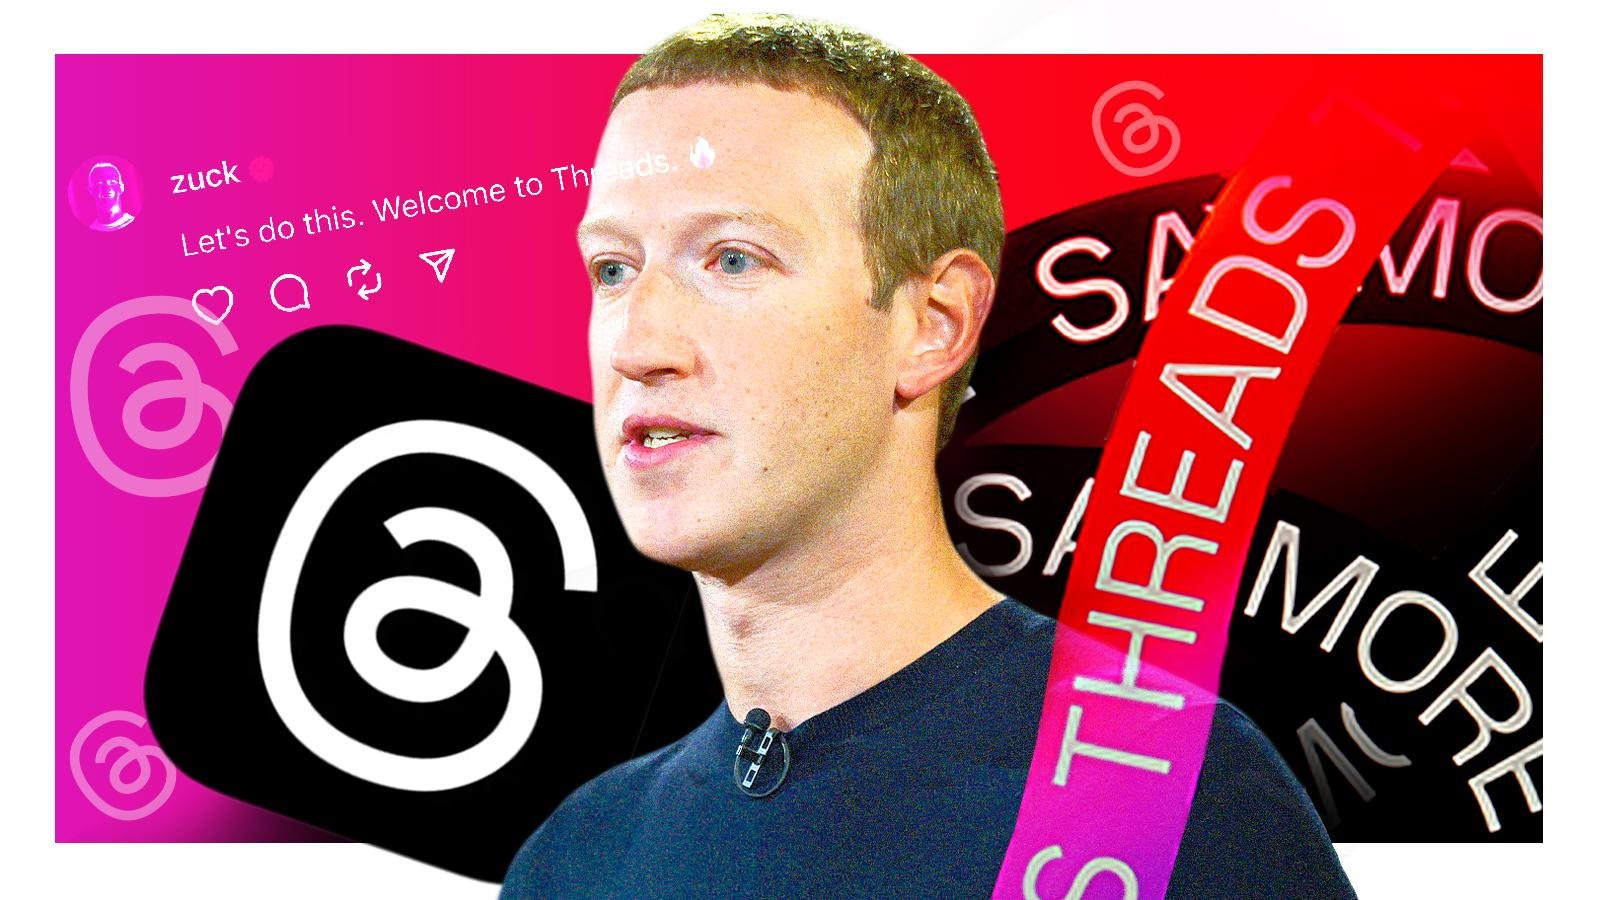 Canh bạc mới của Mark Zuckerberg, chuyển từ giấc mơ ‘vũ trụ ảo’ sang ‘Fediverse’ - Ảnh 3.